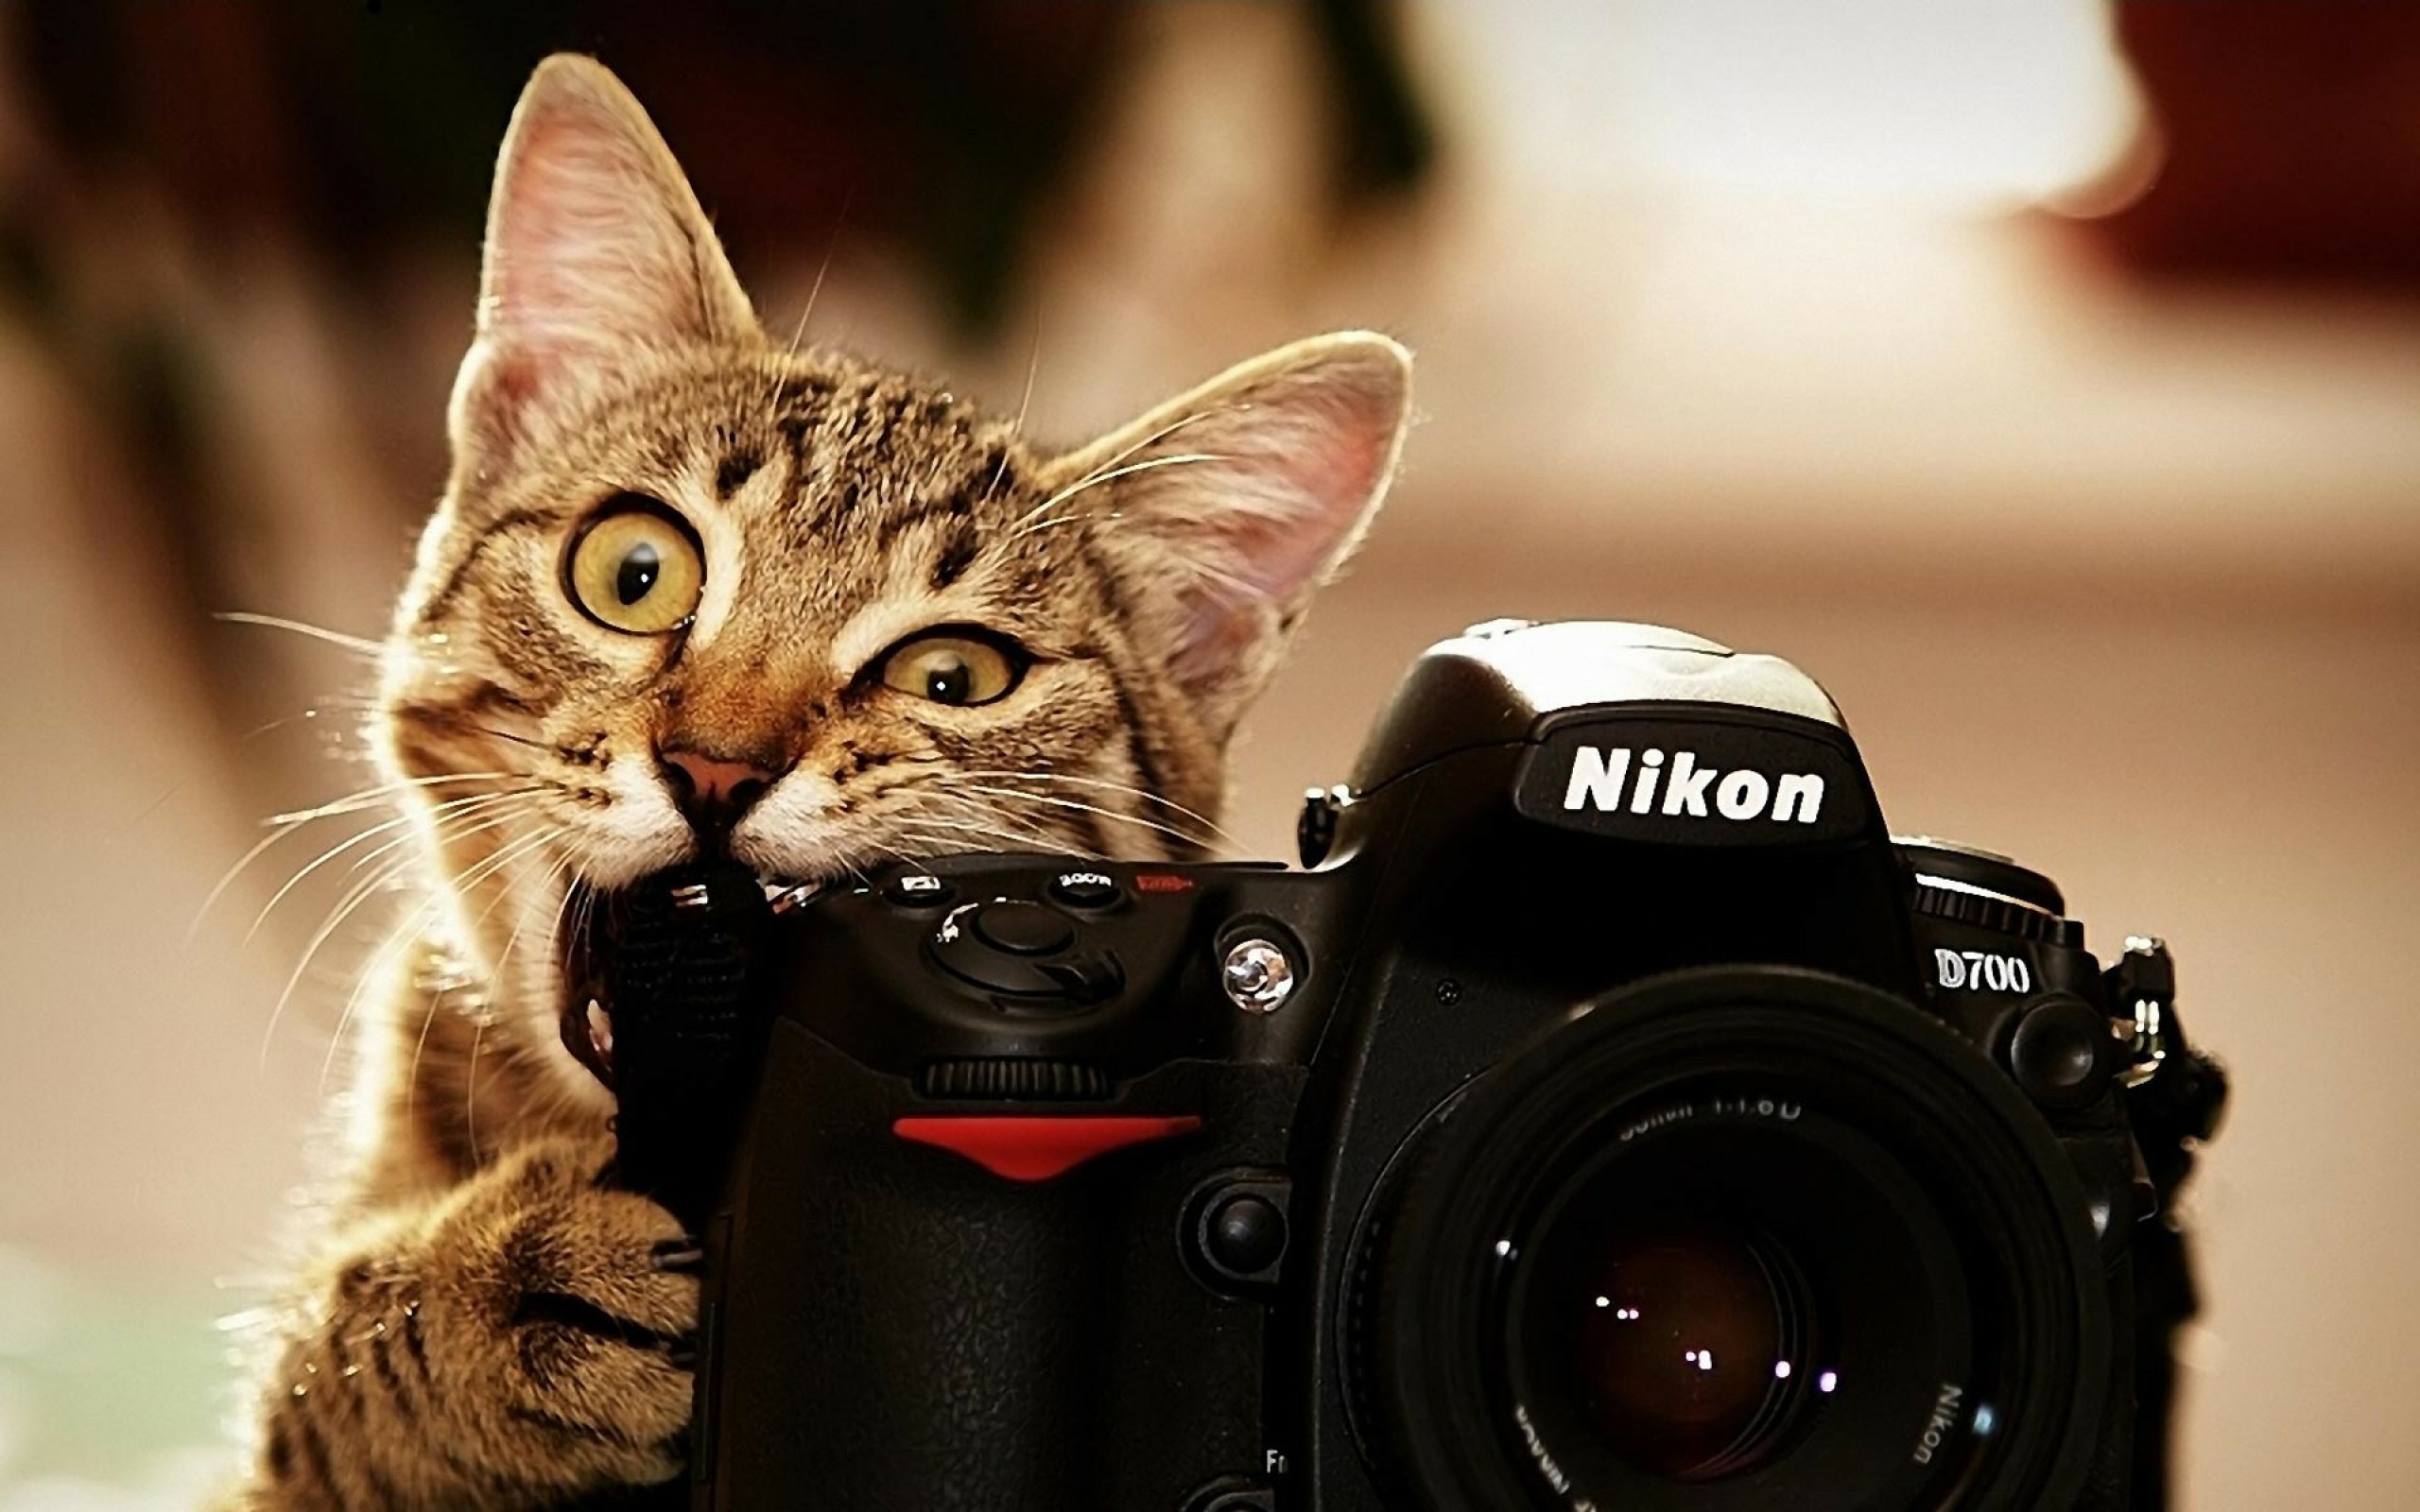 migliori sfondi fotografici,telecamera,gatto,camera digitale,puntare e sparare alla fotocamera,fotografia